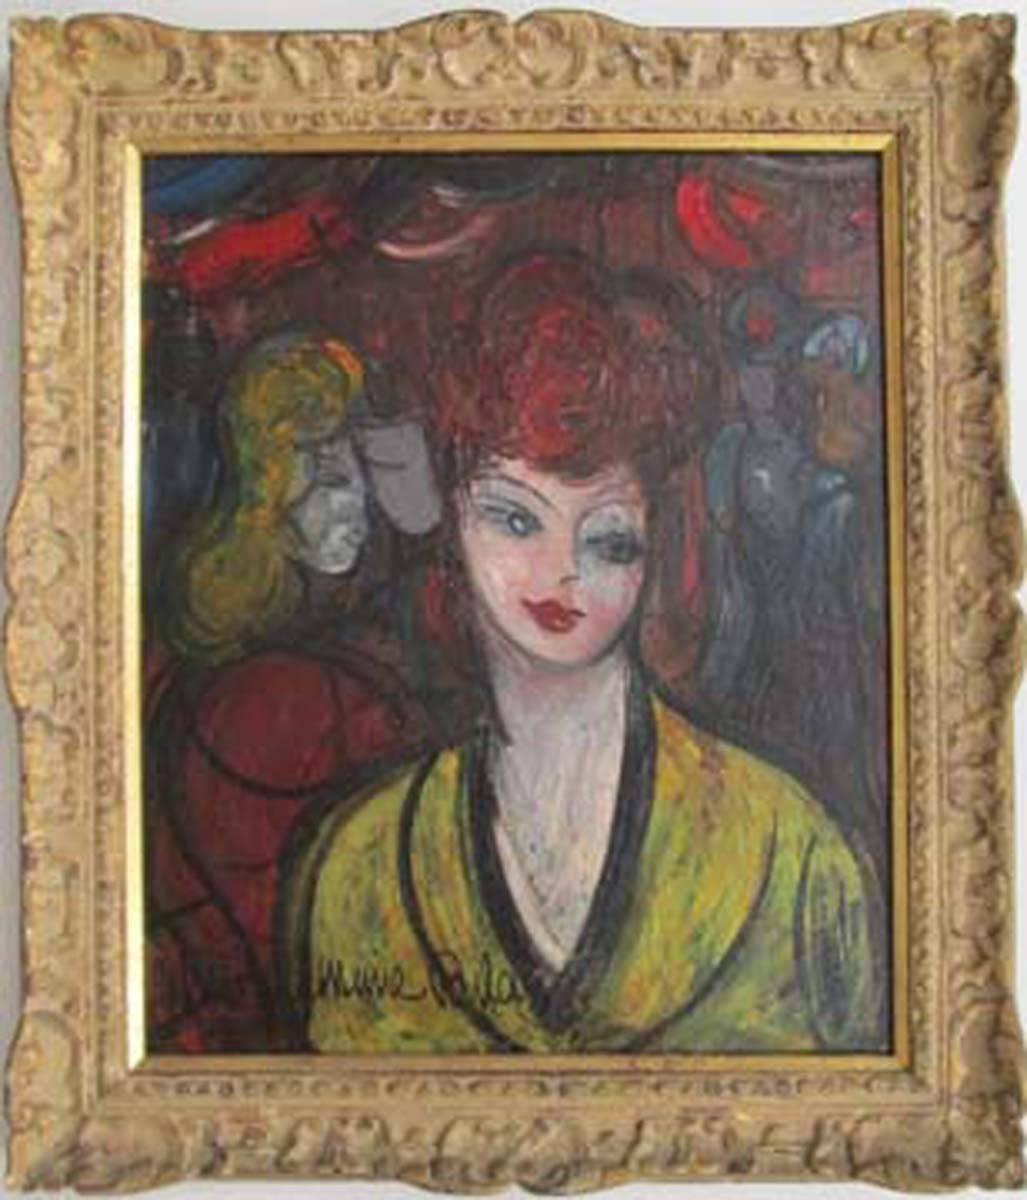 FILLES ET MARINS - Painting by Michel-Marie Poulain